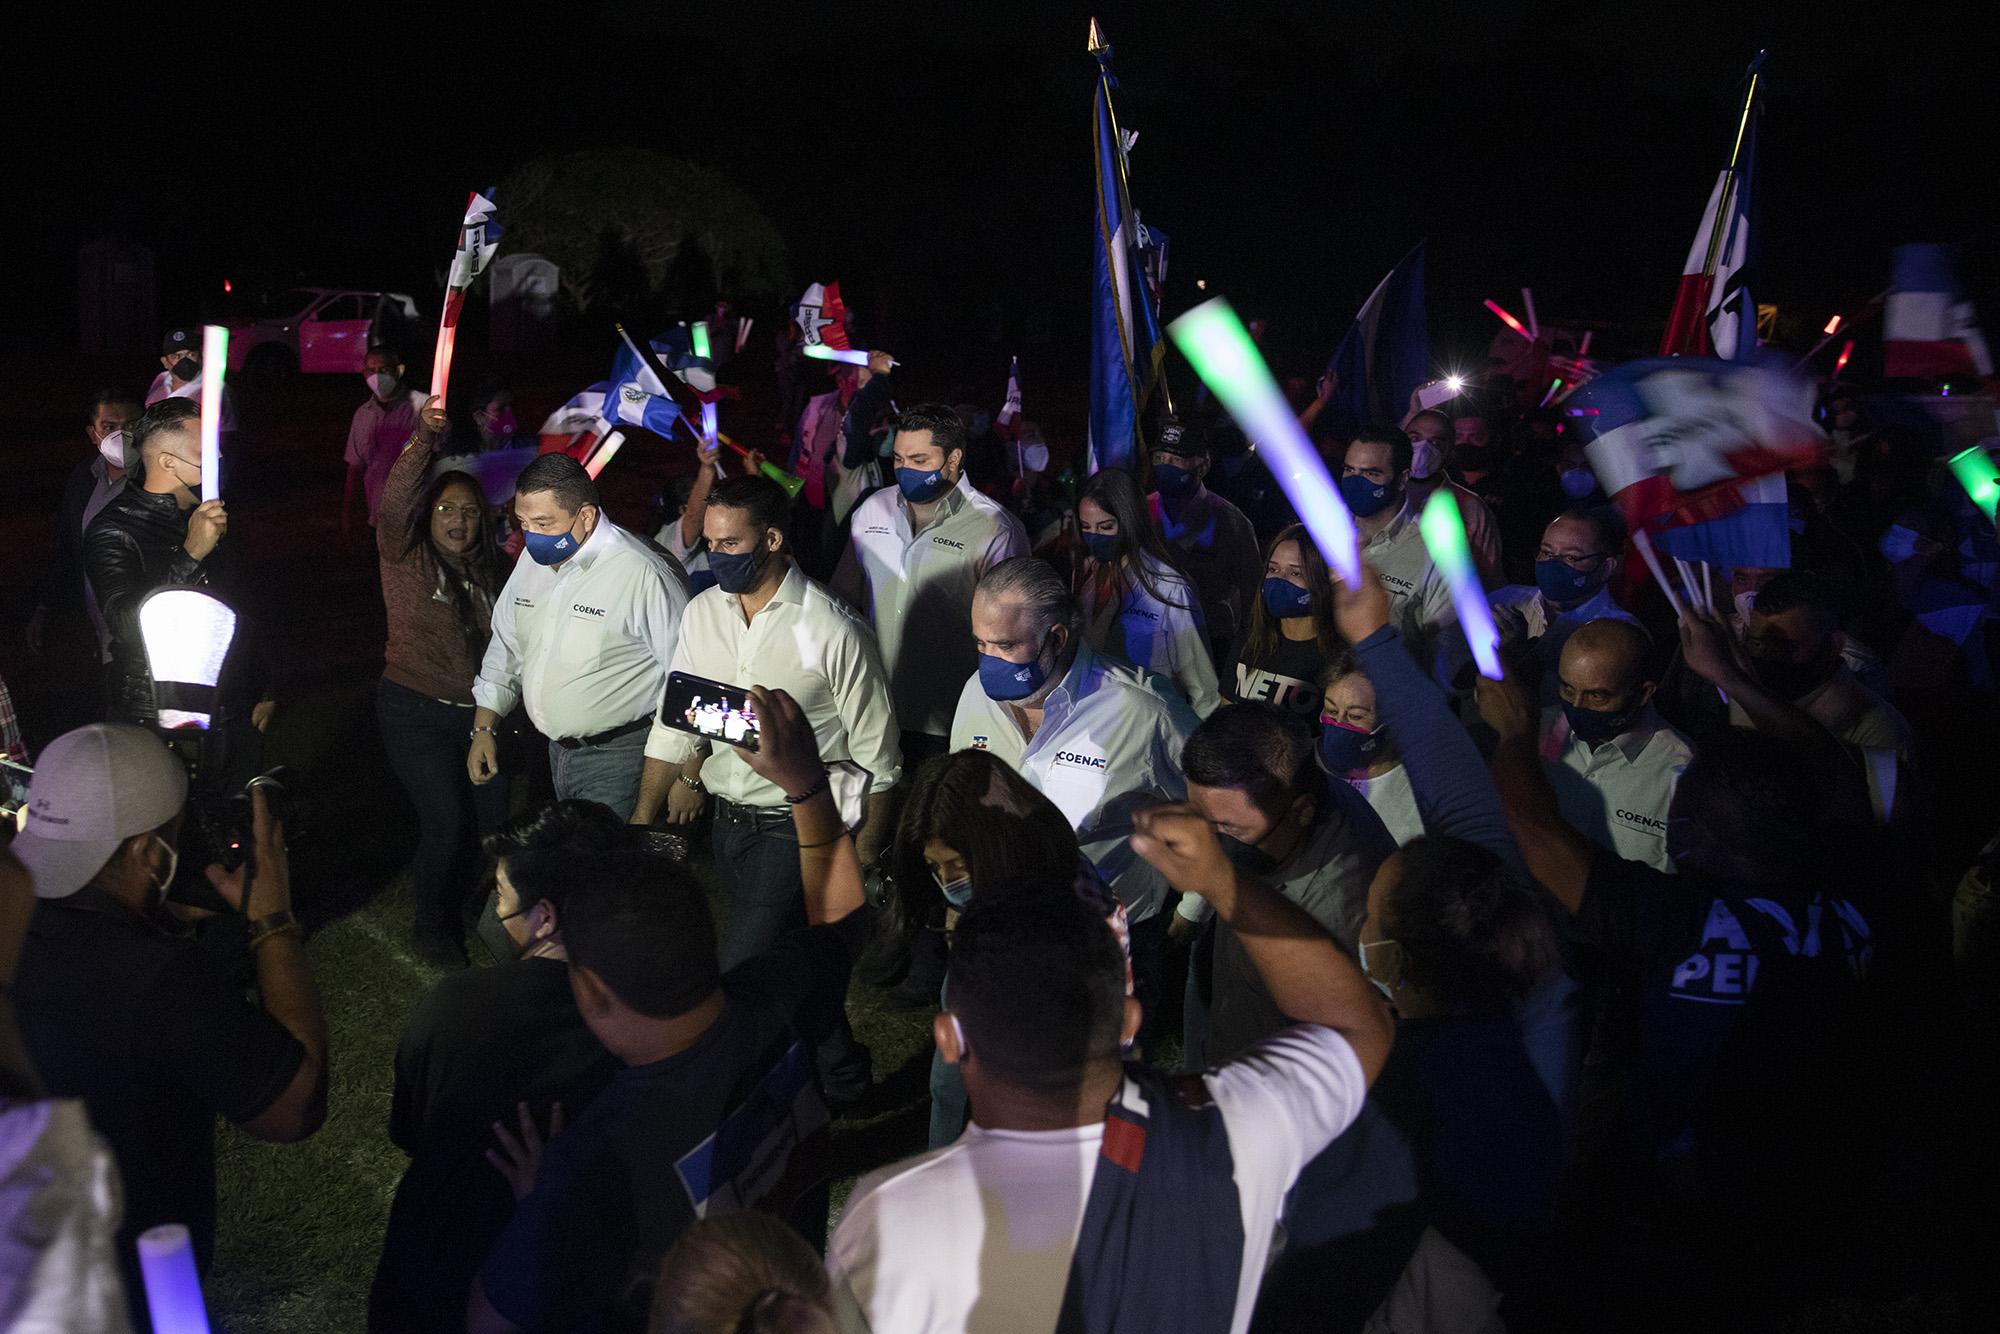 Miembros del Coena y el alcalde de San Salvador, Ernesto Muyshondt, fueron recibidos en el parque Bicentenario por una militancia reducida a unas decenas de personas la noche de este domingo 27 de diciembre de 2020. Foto de El Faro: Carlos Barrera